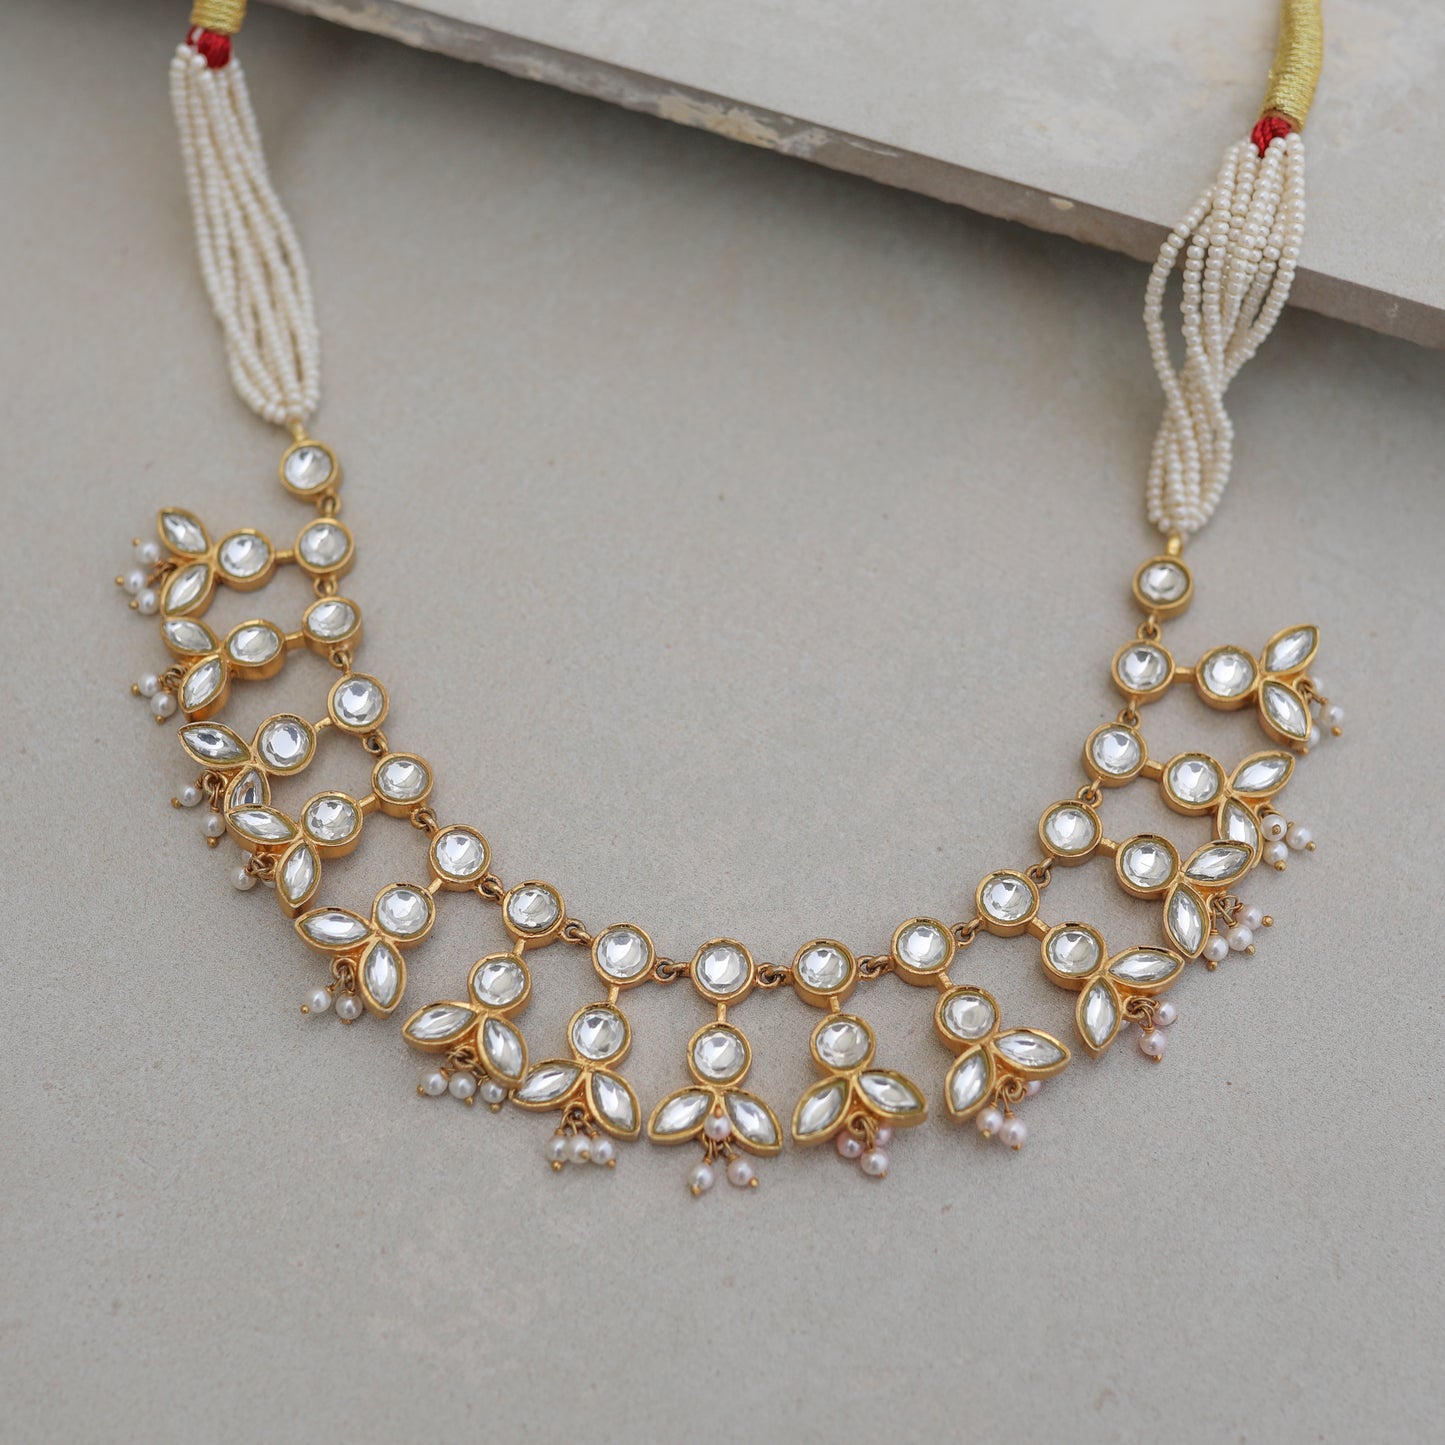 Festive Jadau necklace